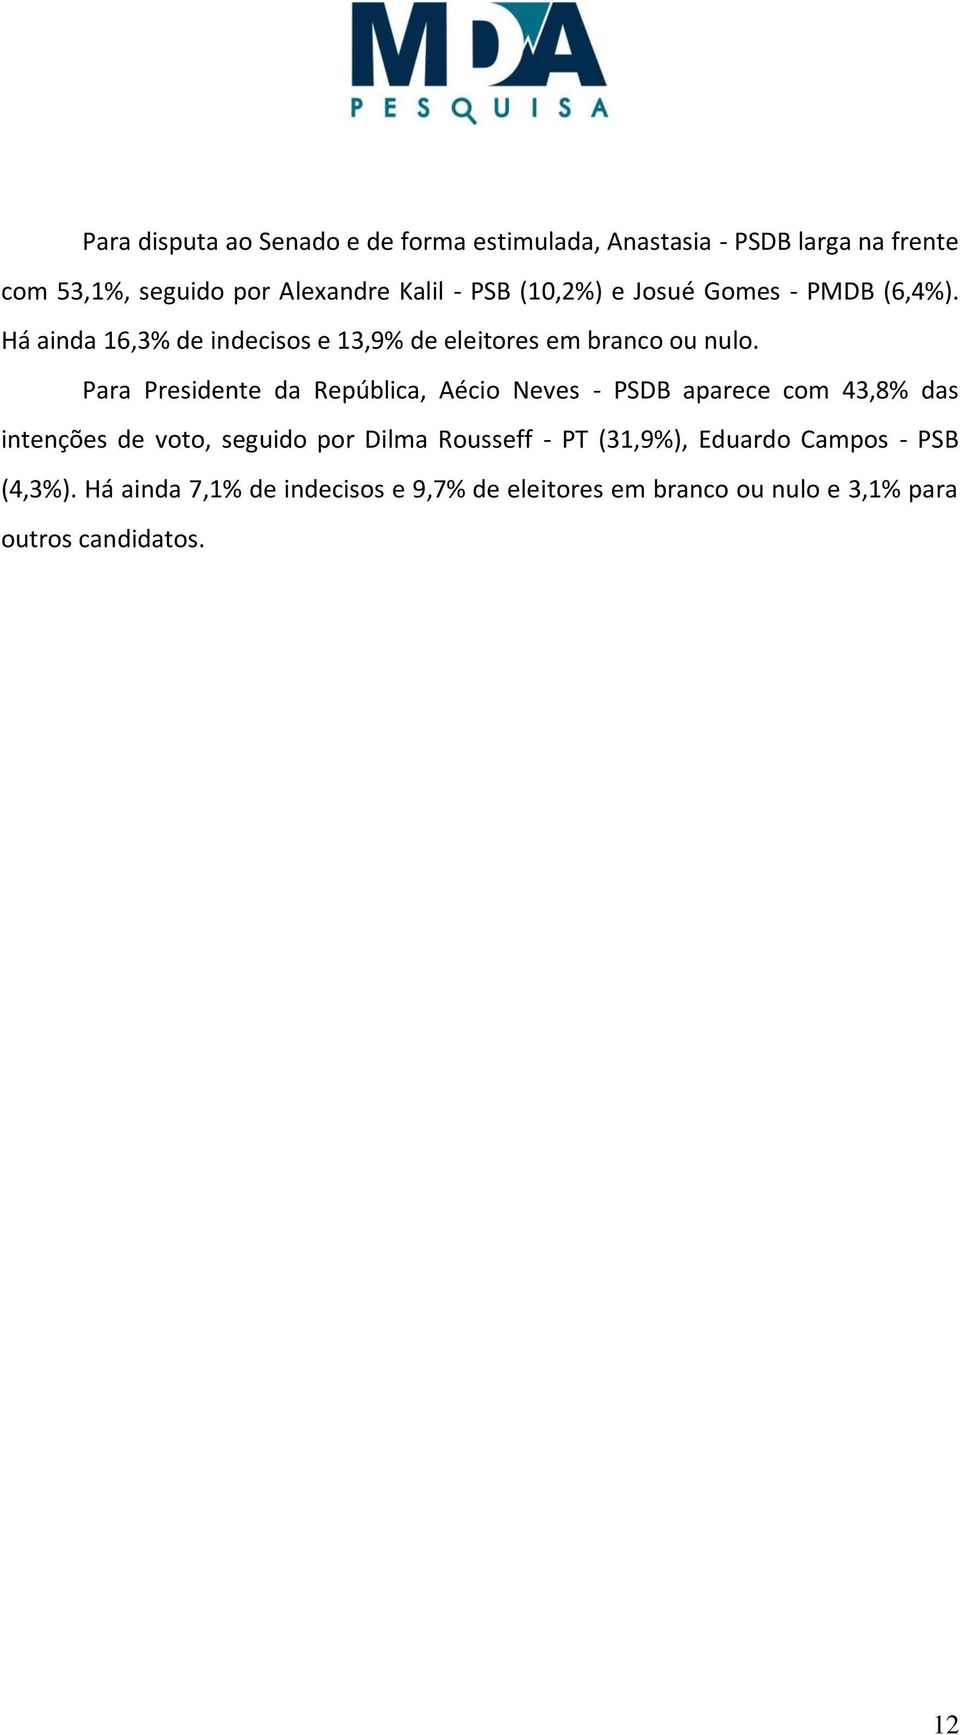 Para Presidente da República, Aécio Neves - PSDB aparece com 43,8% das intenções de voto, seguido por Dilma Rousseff - PT